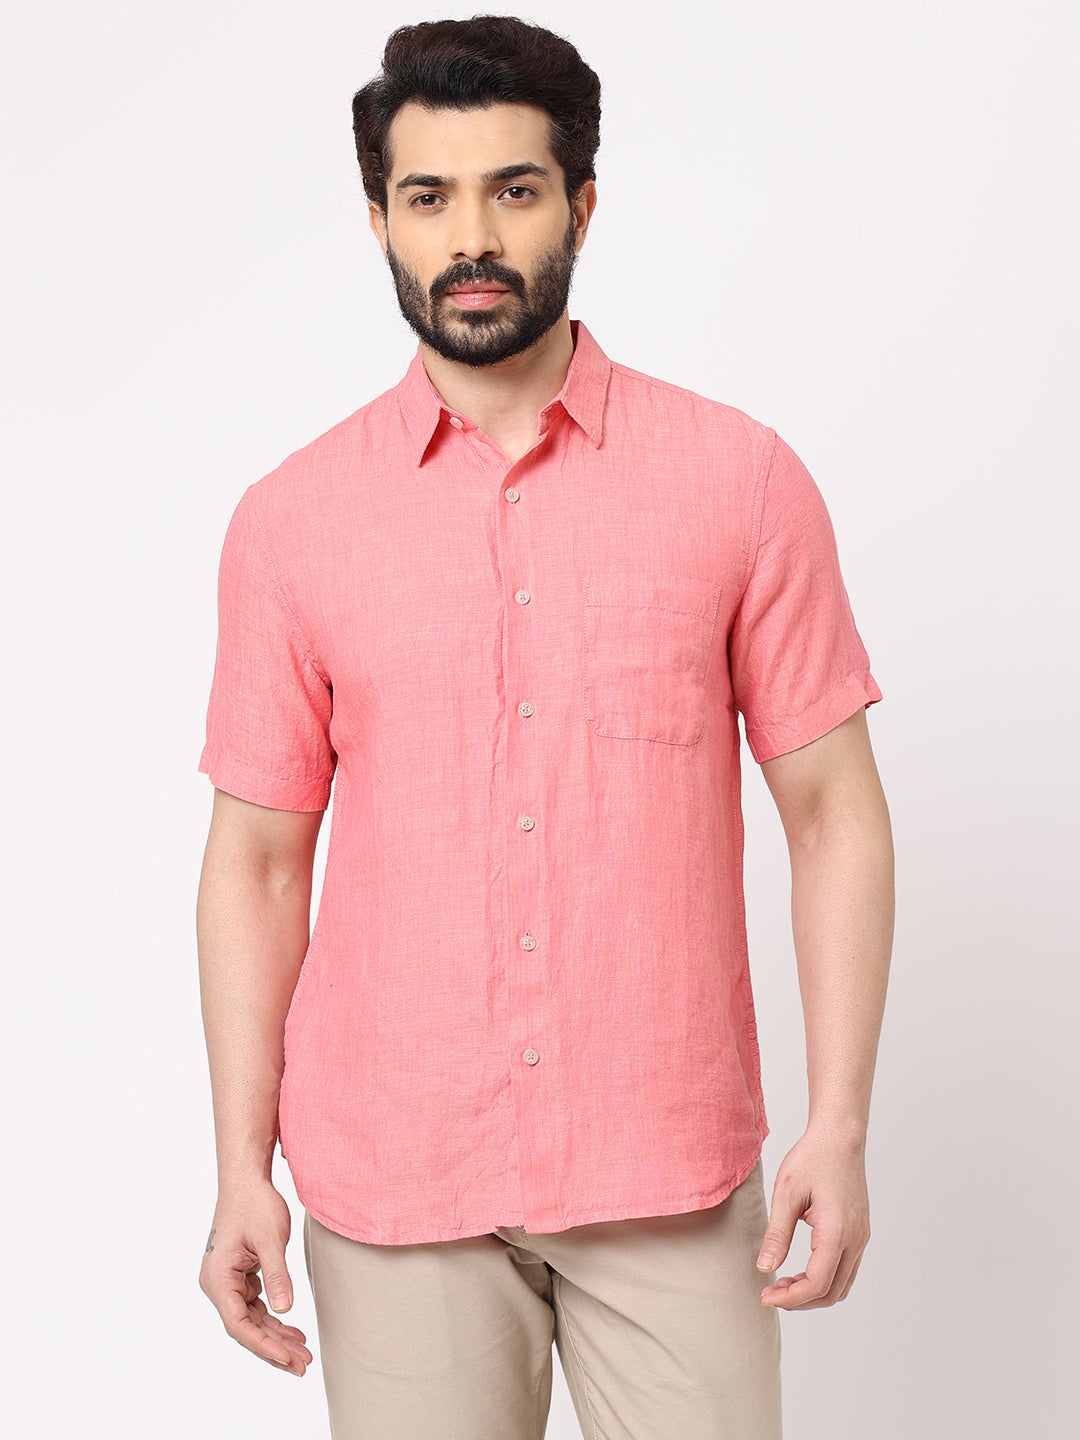 Mens 100% Linen Short Sleeve Pink Regular Fit Shirt